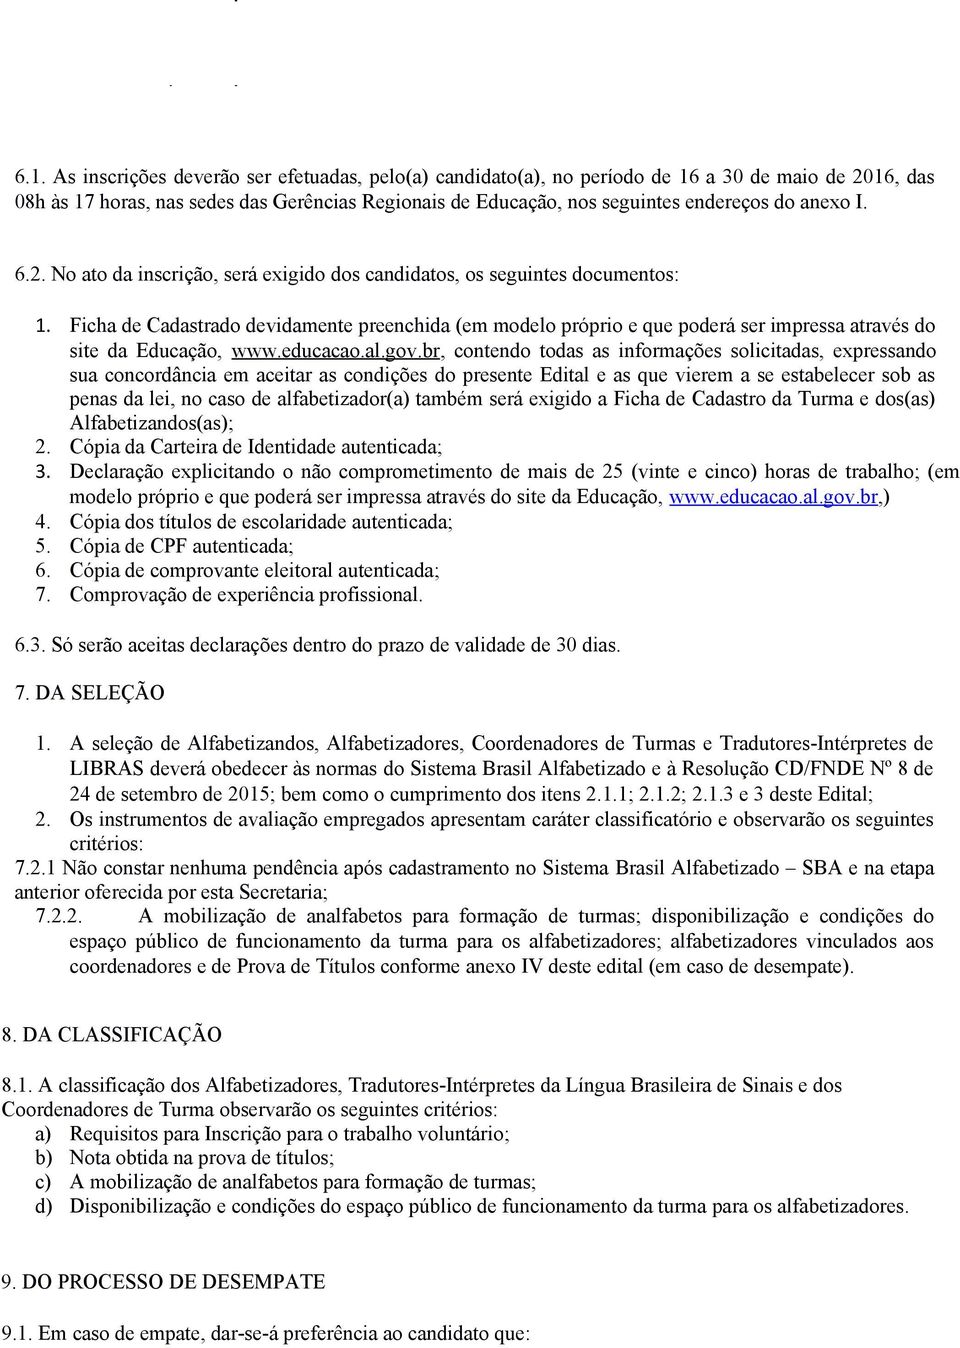 Ficha de Cadastrado devidamente preenchida (em modelo próprio e que poderá ser impressa através do site da Educação, www.educacao.al.gov.